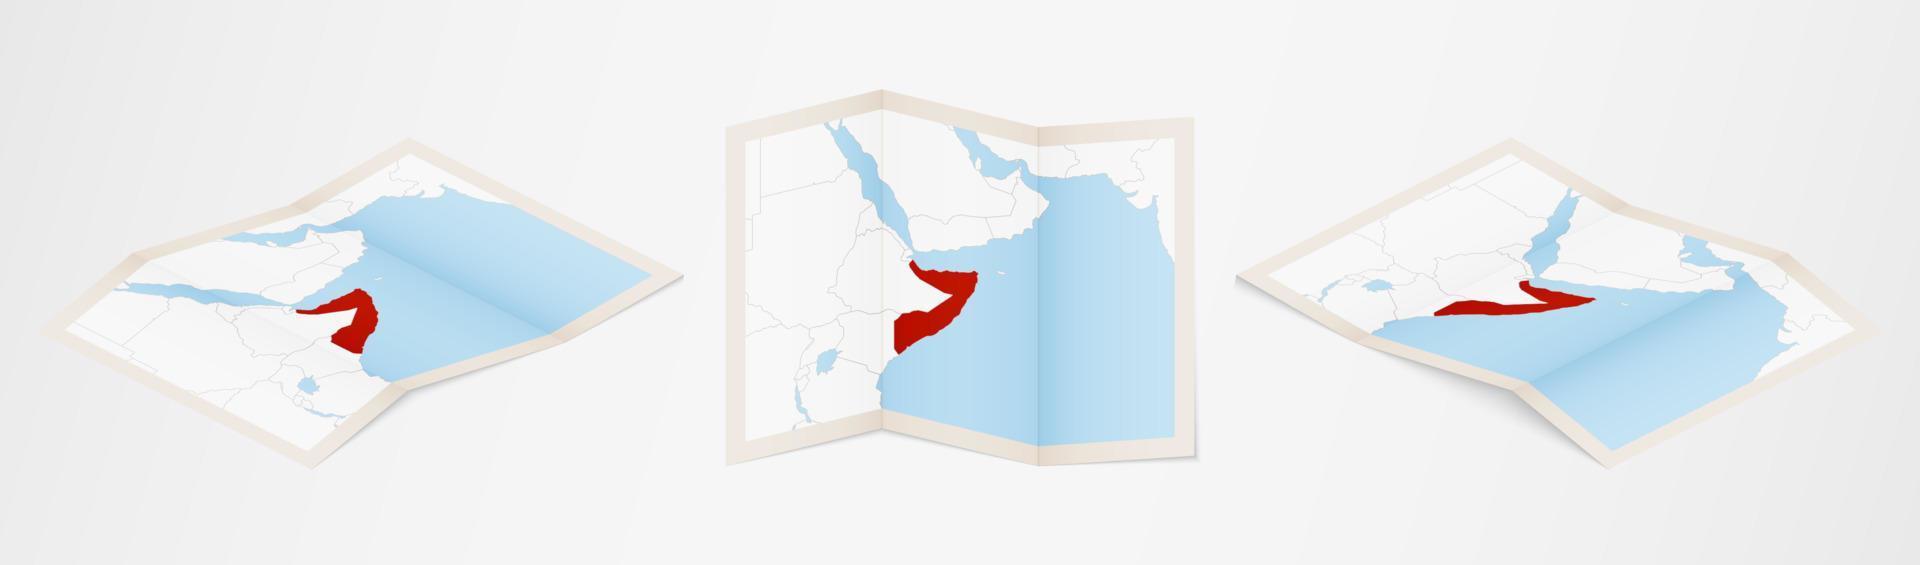 Faltkarte von Somalia in drei verschiedenen Versionen. vektor